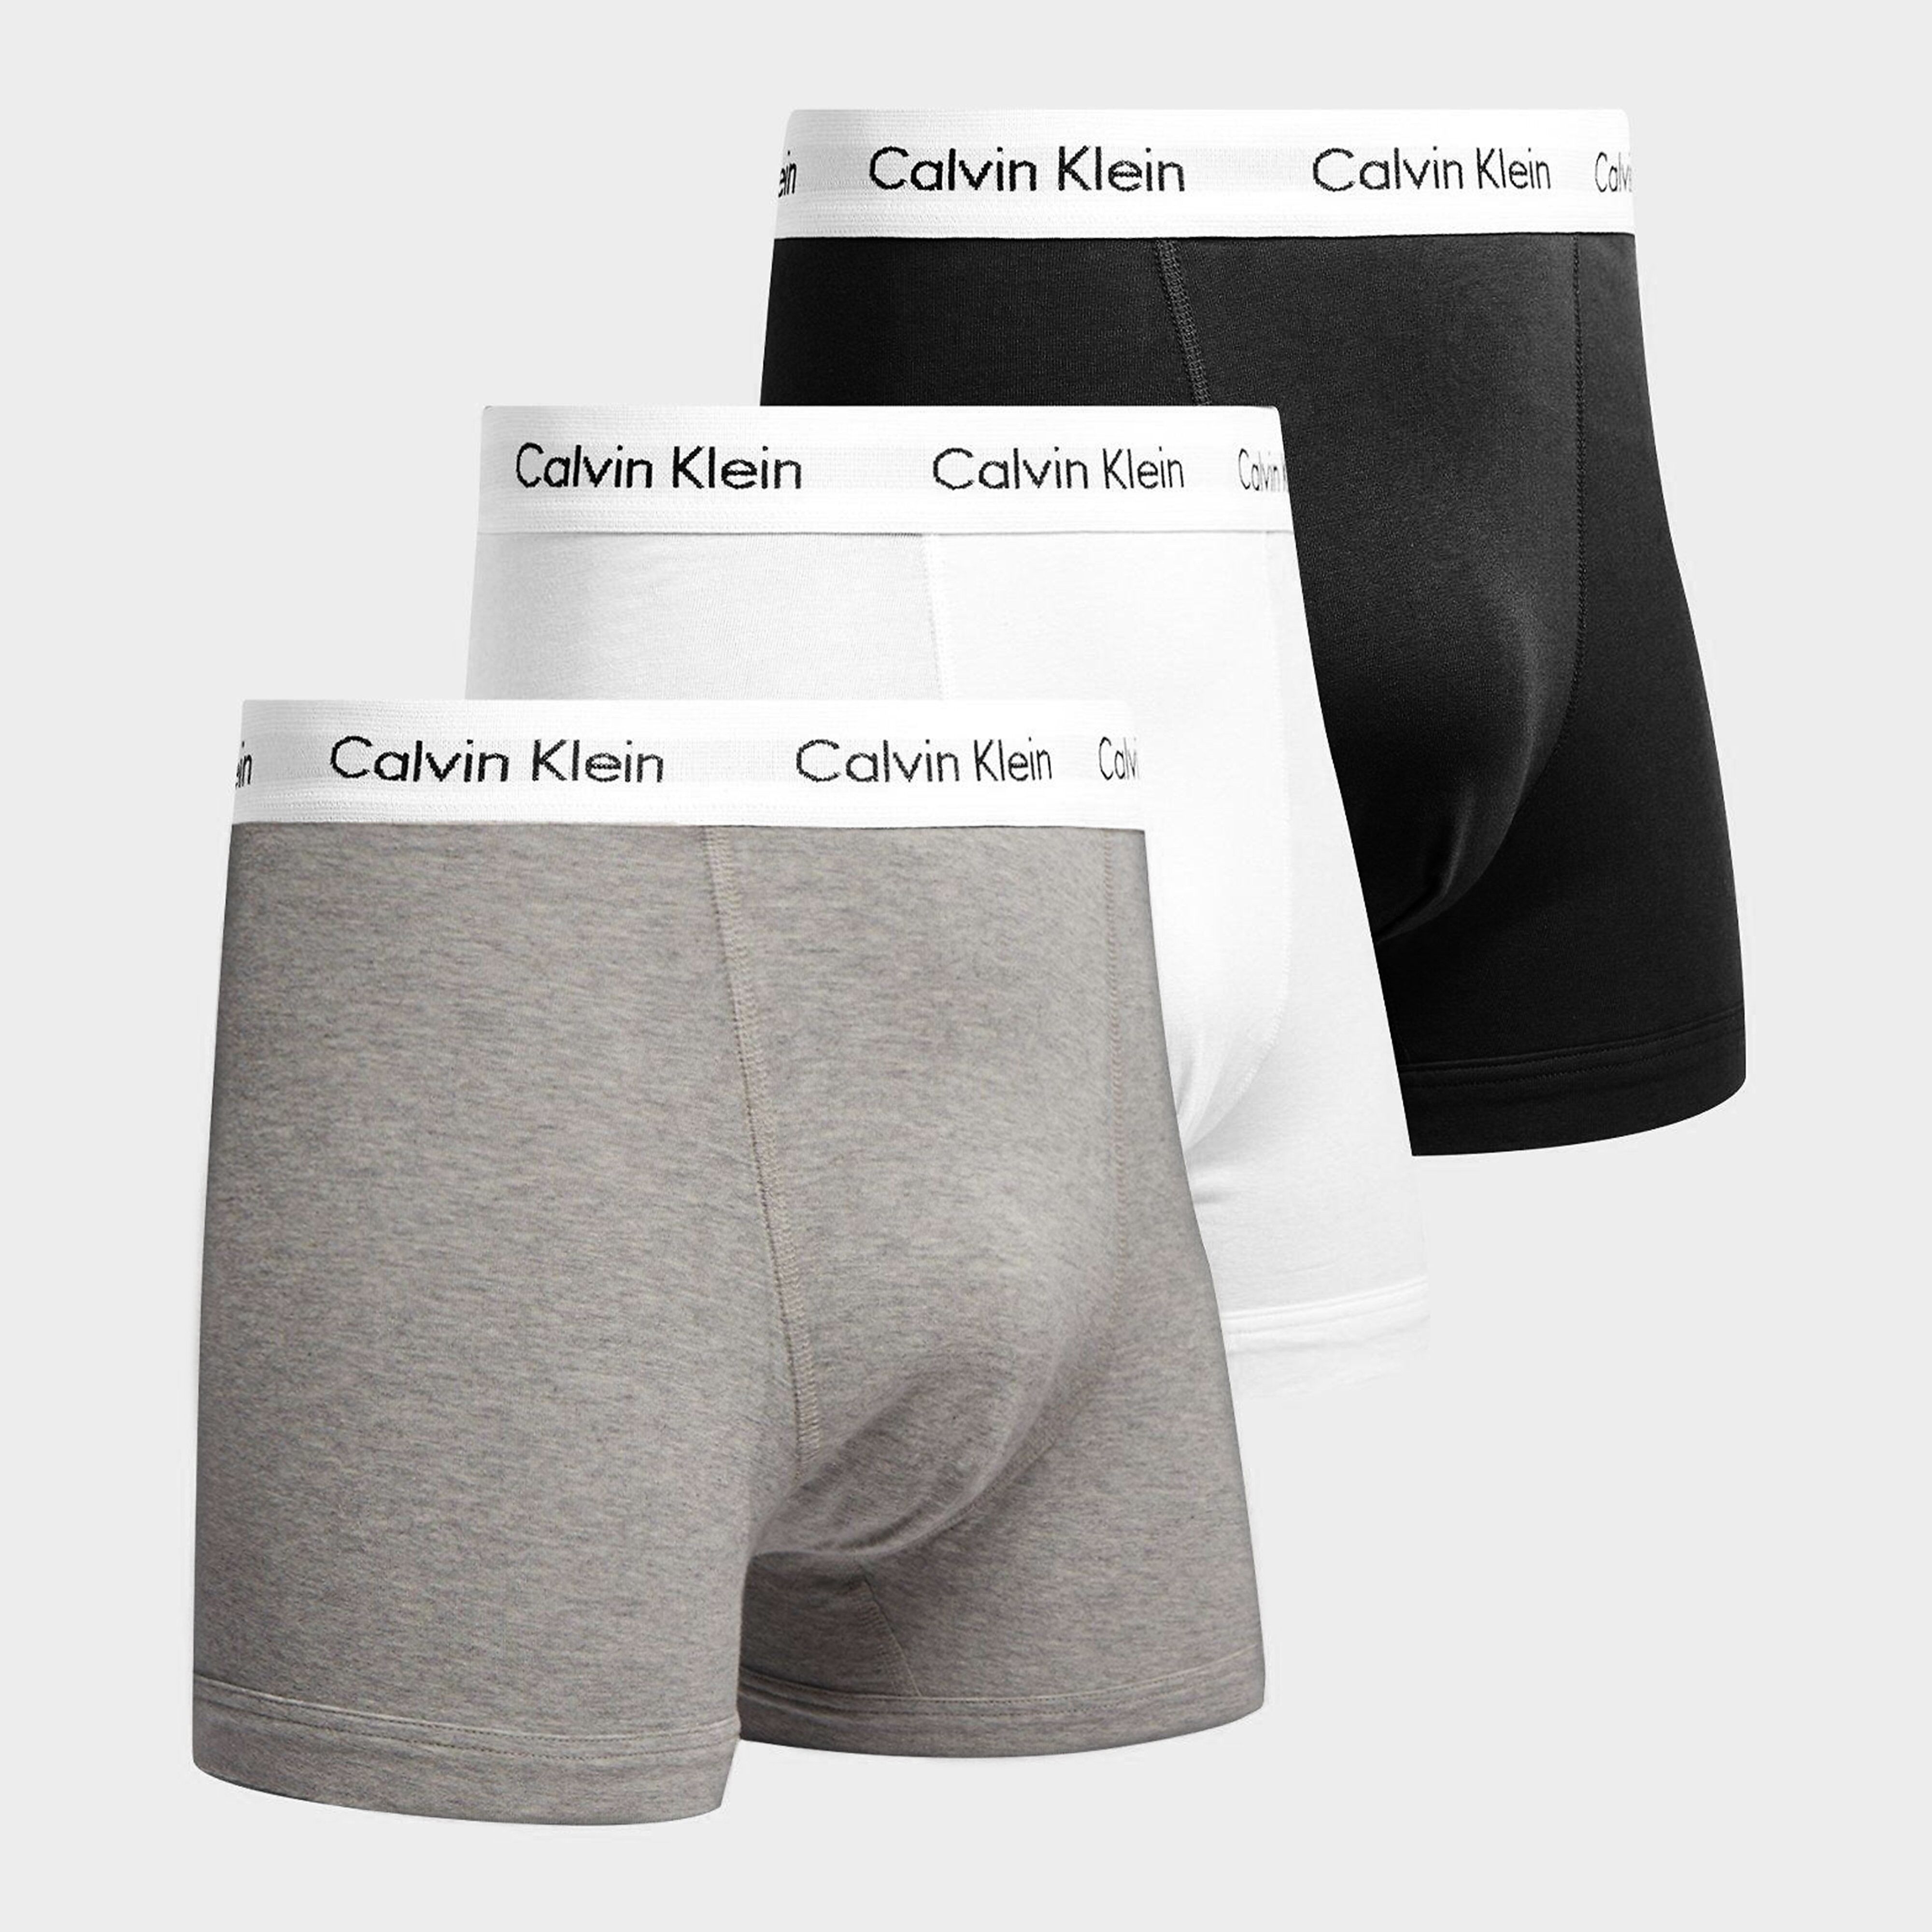 Calvin Klein Underwear 3-Pack Trunks - Black/Grey/White/Black/White - Mens  size: XL